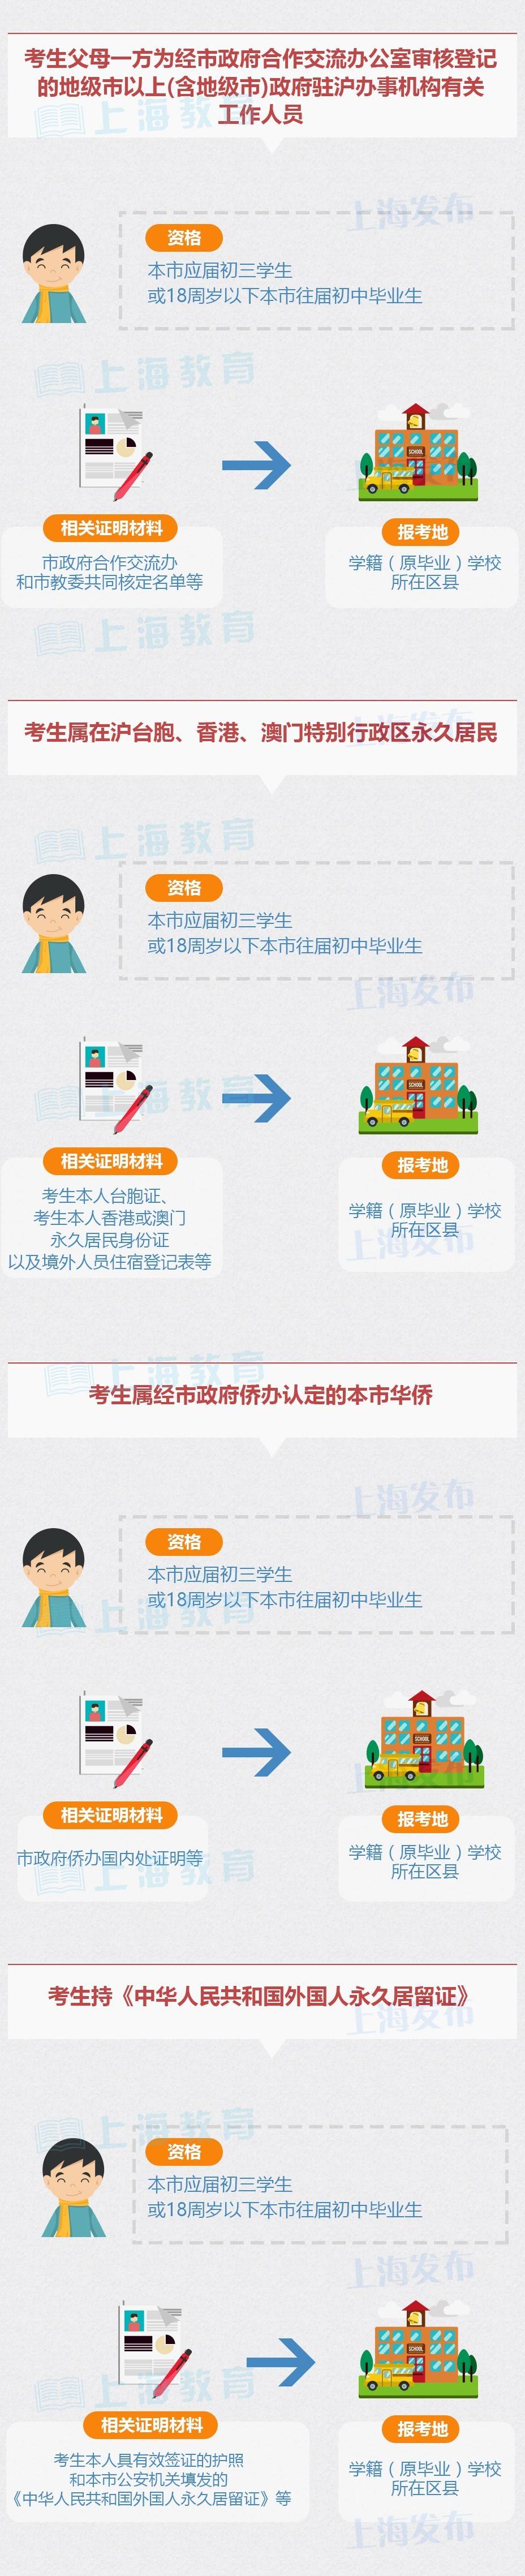 2017年上海中考即将报名 沪籍非沪籍报考条件一览3